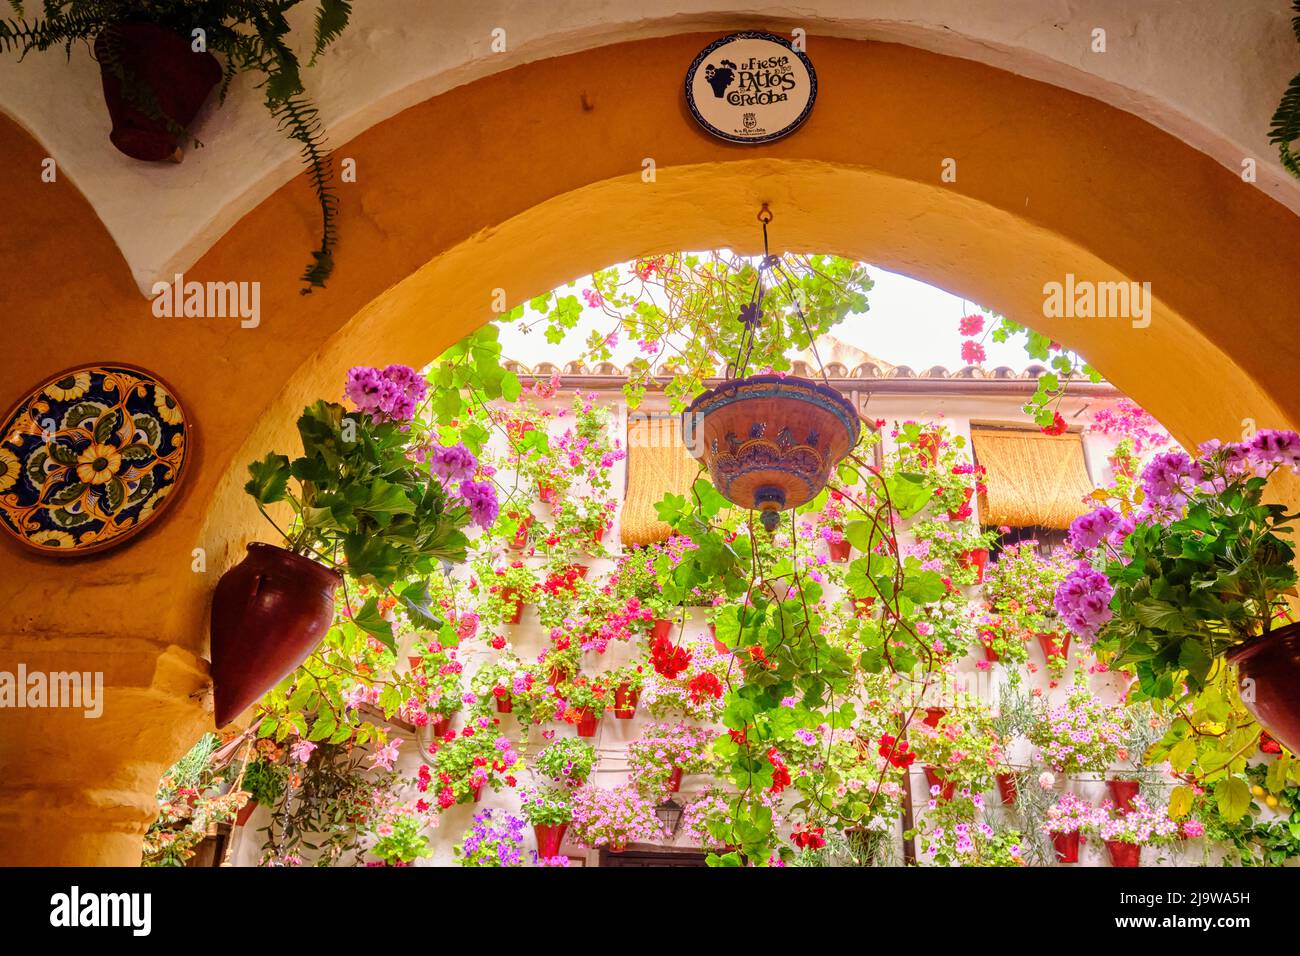 Entrée à une maison privée avec un magnifique patio plein de fleurs et de fraîcheur. Cordoue, Andalousie. Espagne Banque D'Images